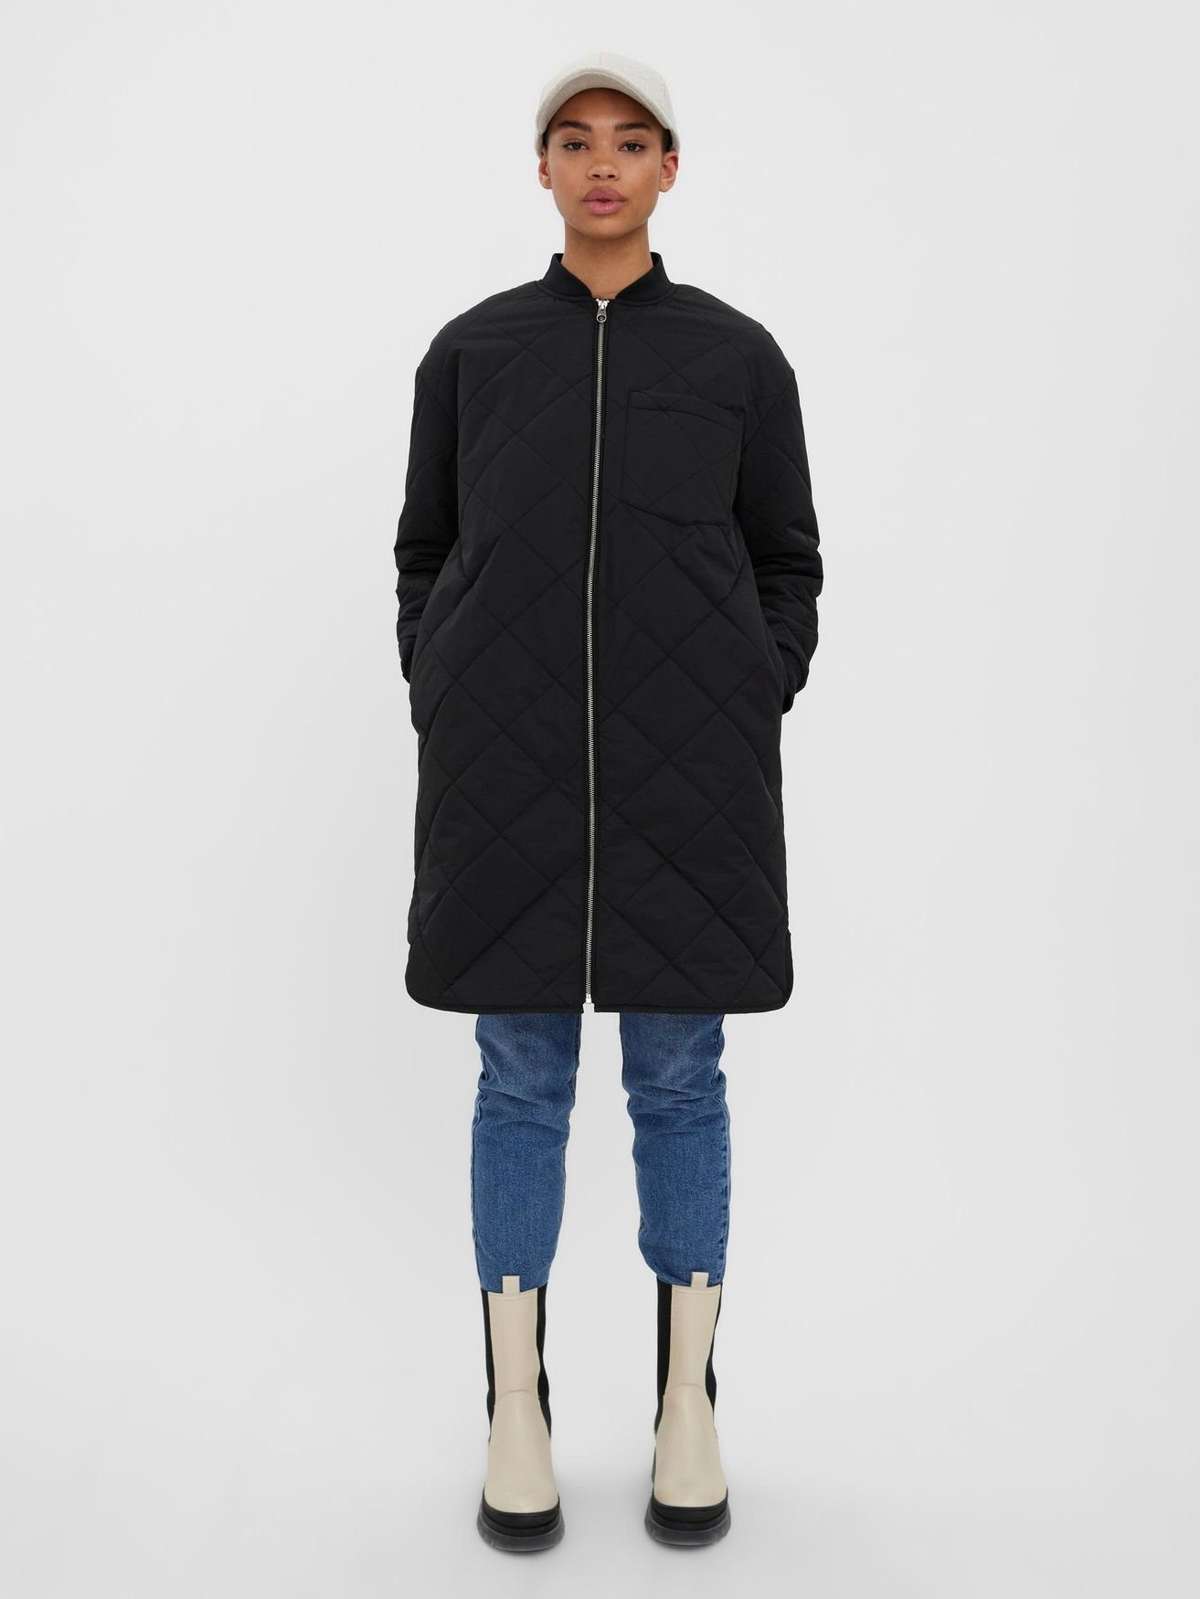 Короткое пальто, длинная телогрейка, утепленная парка, переходное пальто VMNATALIE 4826 черного цвета.